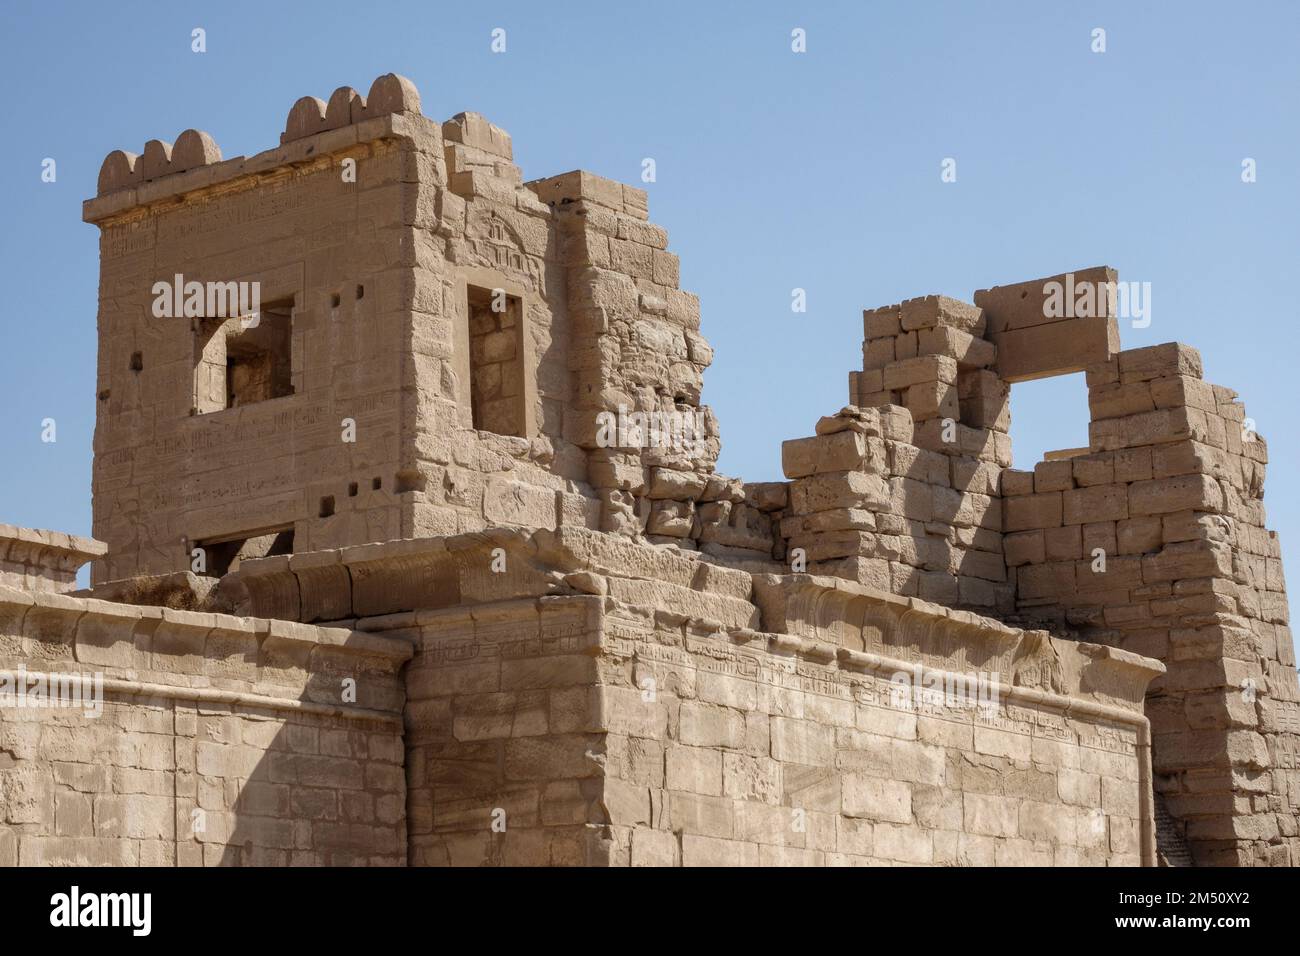 Das hohe Tor, Tempel des Medinet Habu, Westufer des Nils Luxor, Ägypten Stockfoto